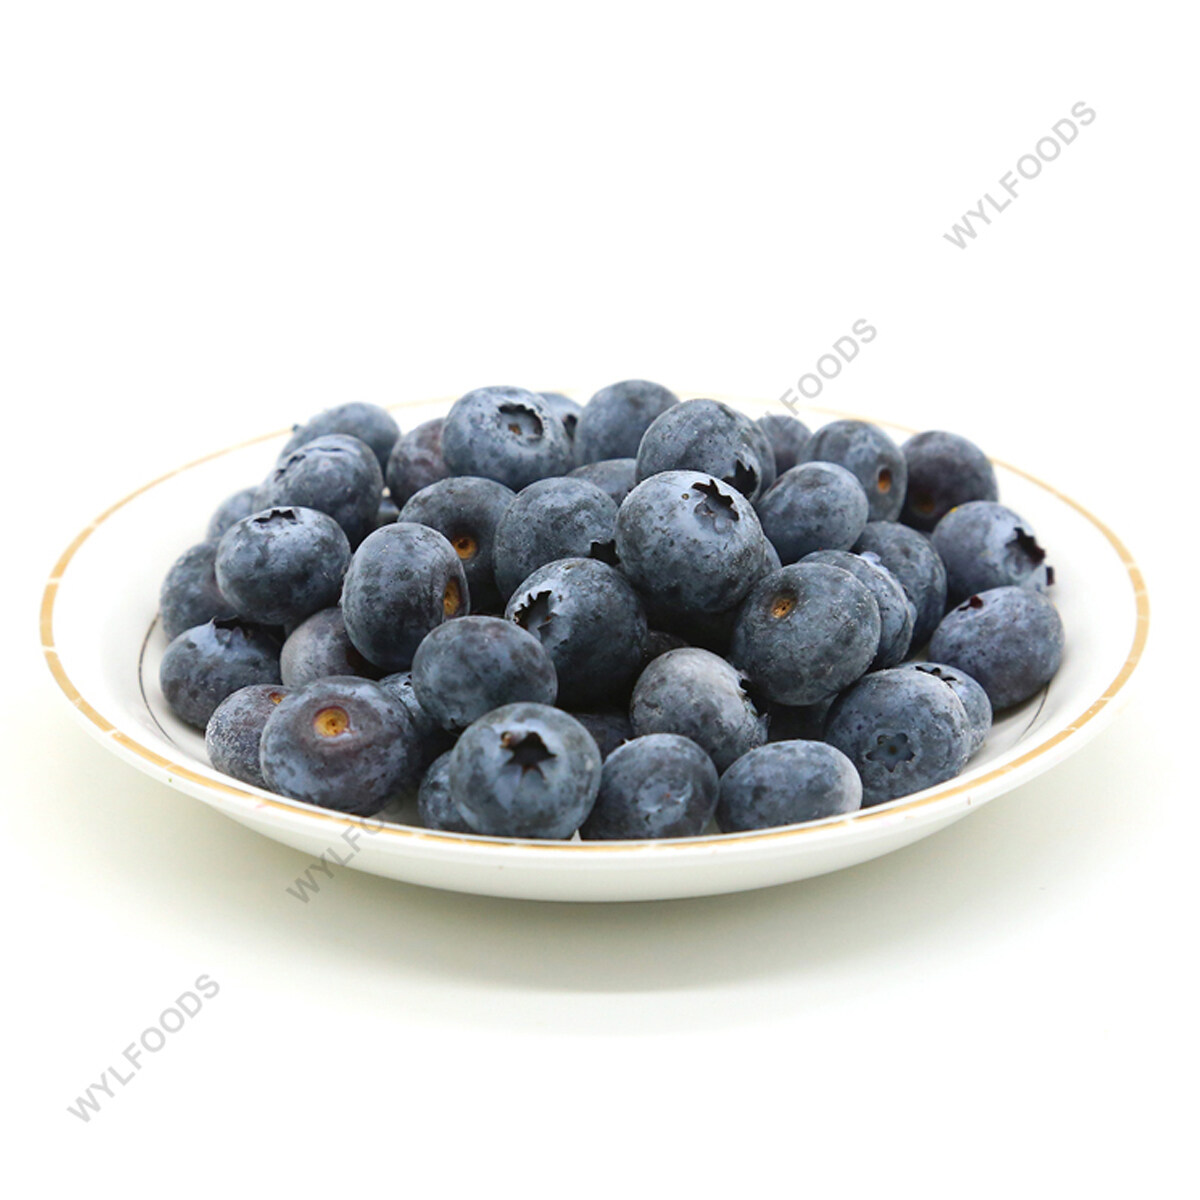 BRC-A затверджено 12-16 мм Blueberries 15% Brix цілий заморожений чорниця